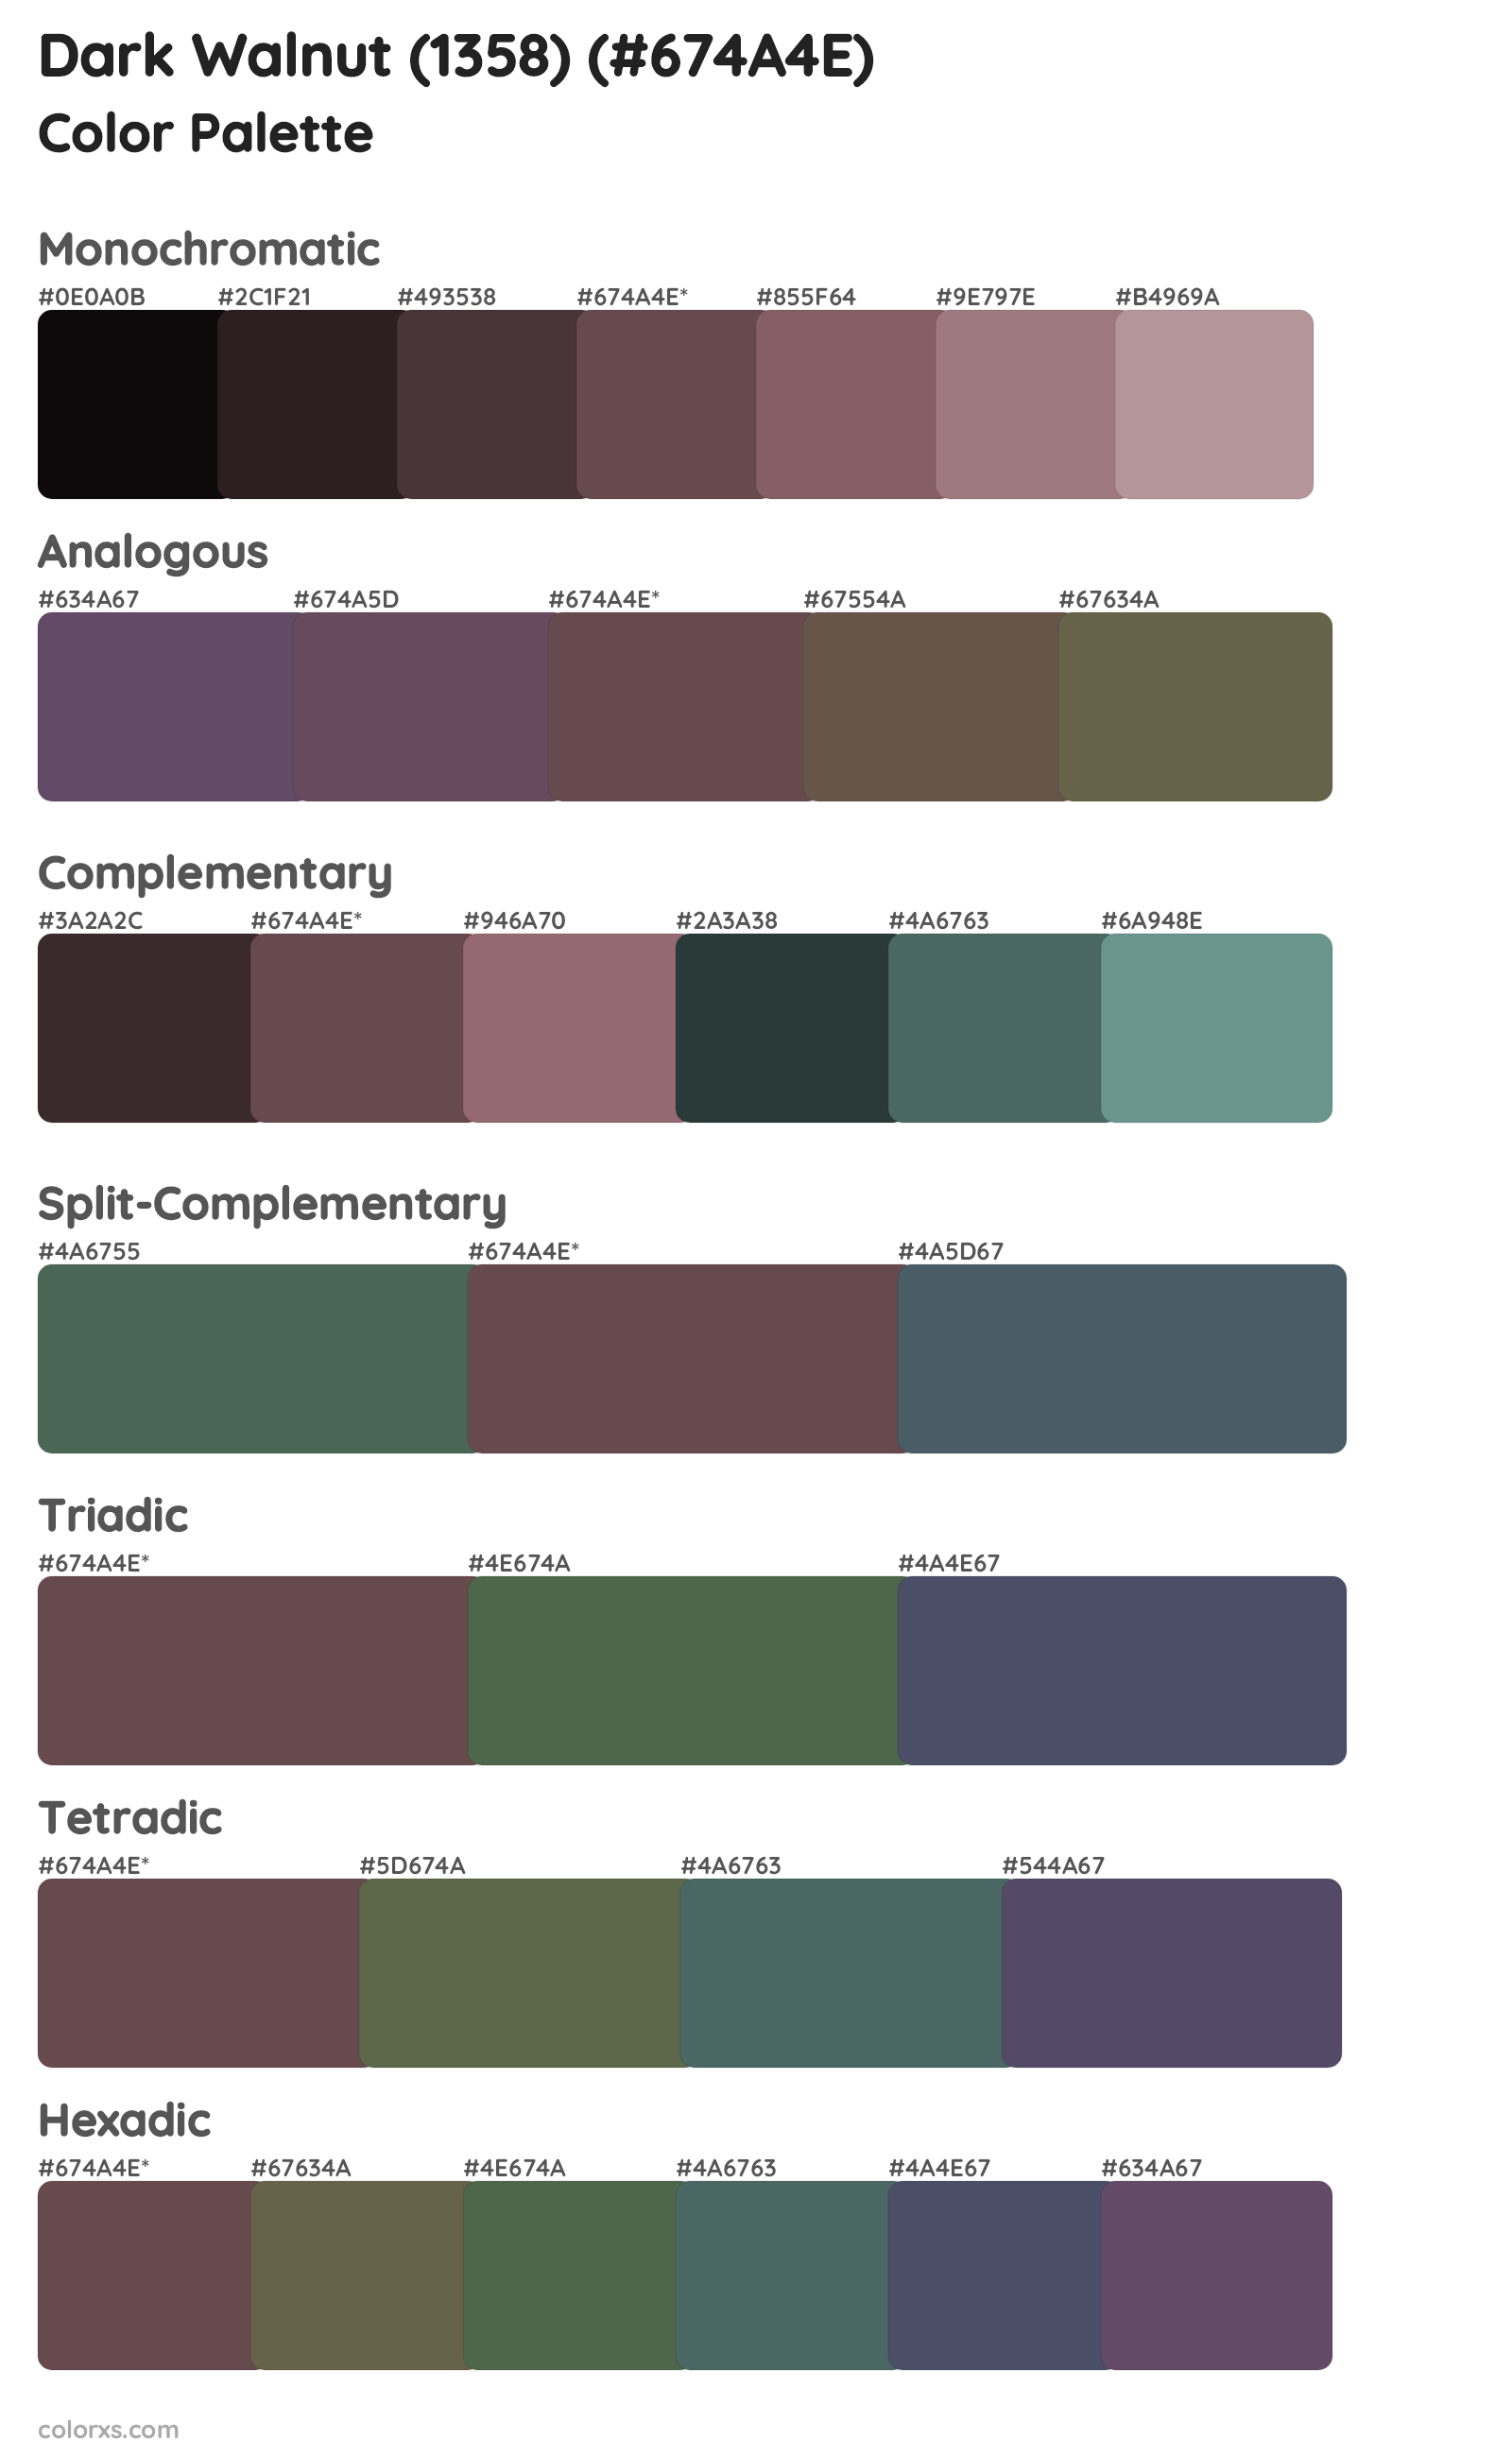 Dark Walnut (1358) Color Scheme Palettes